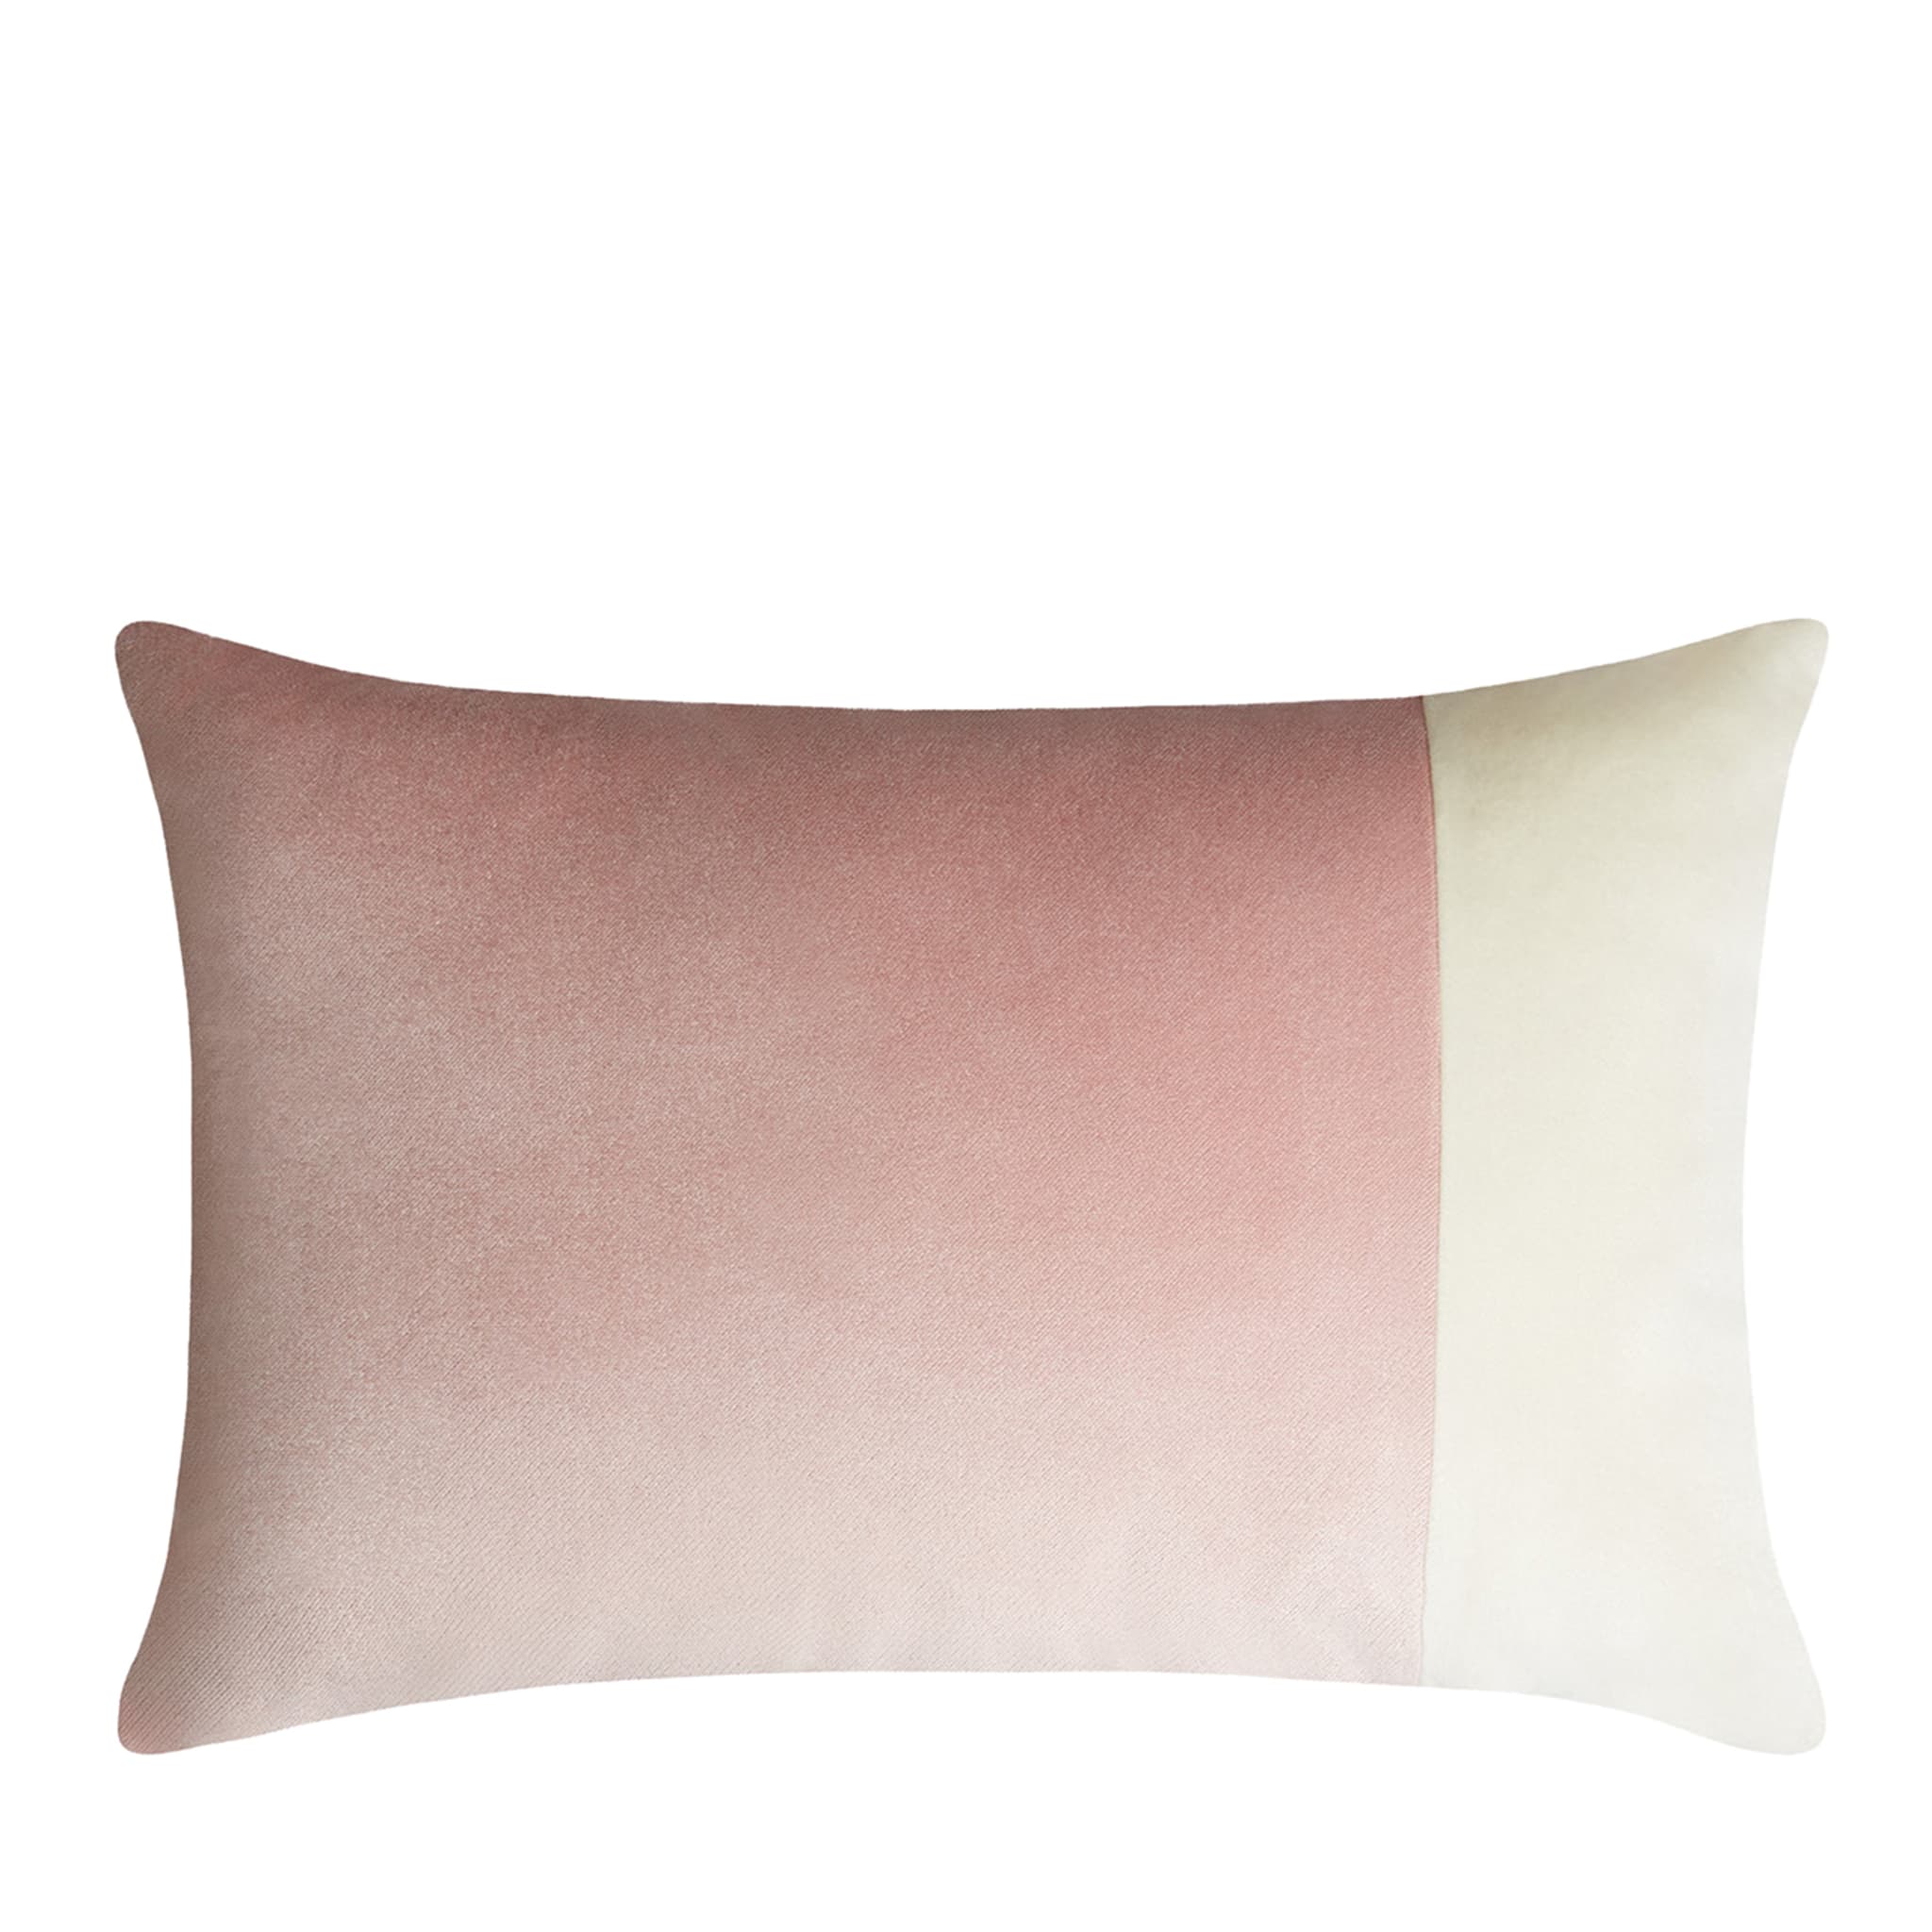 Cuscino rettangolare doppio rosa e bianco - Vista principale